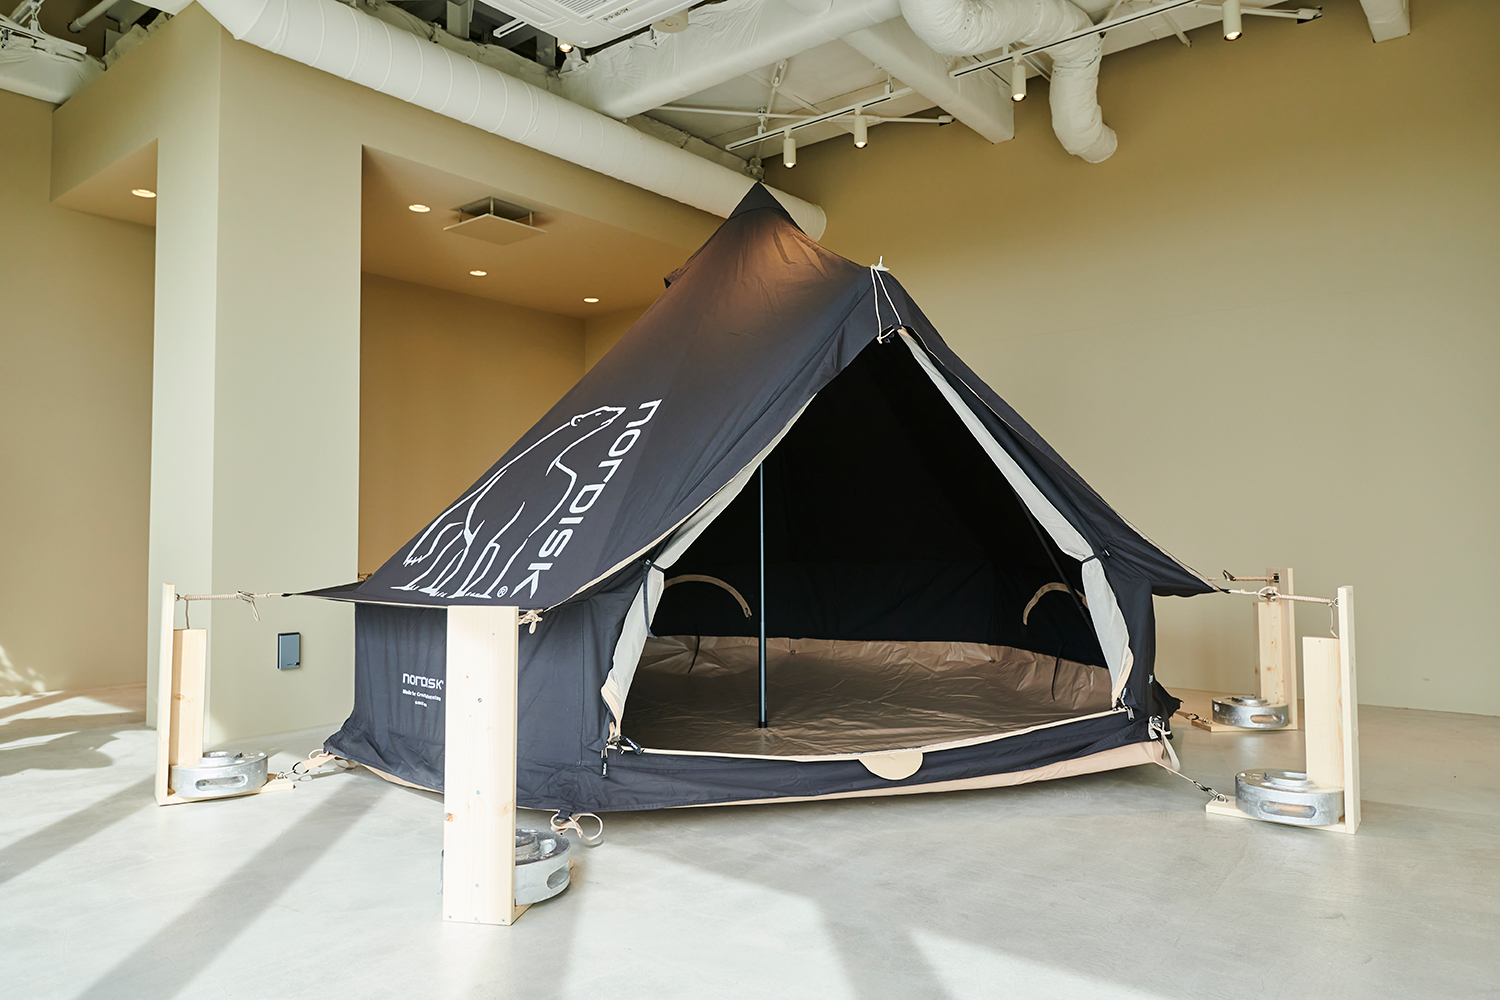 アウトドア テント/タープ HYGGE STORE by NORDISKのオープンを記念したスペシャルテント&タープ